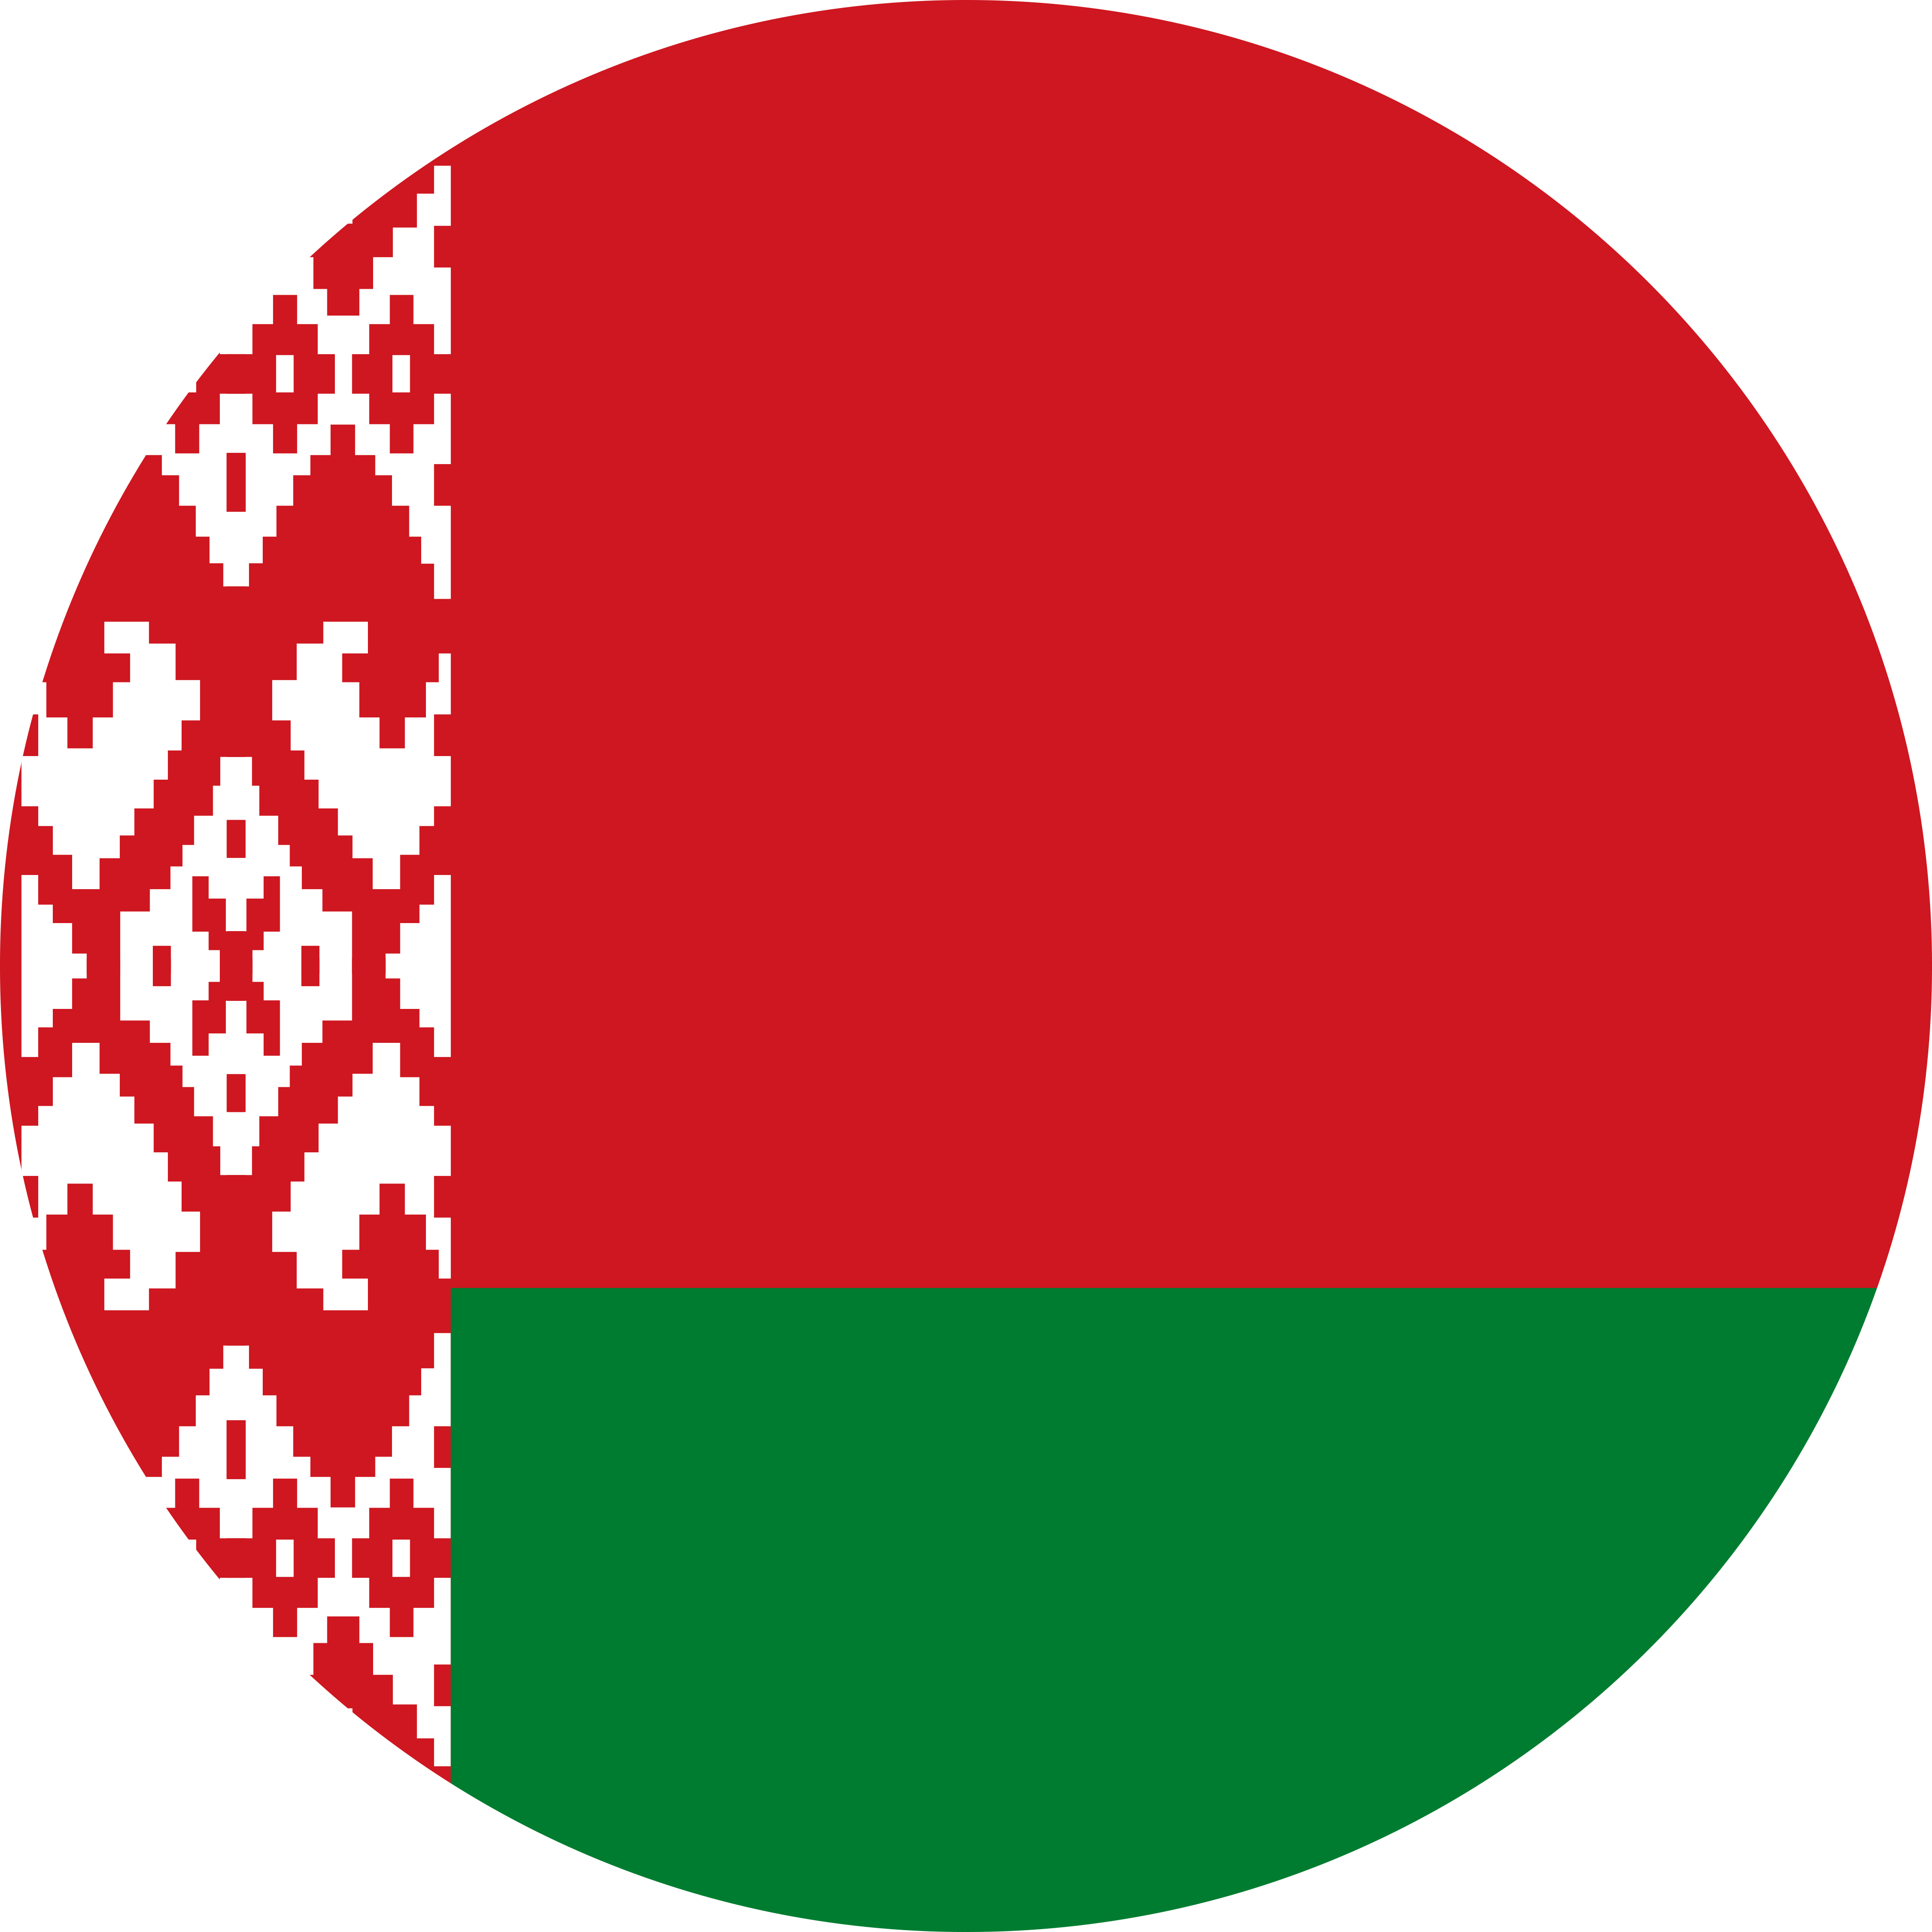 Belarus (w) U16